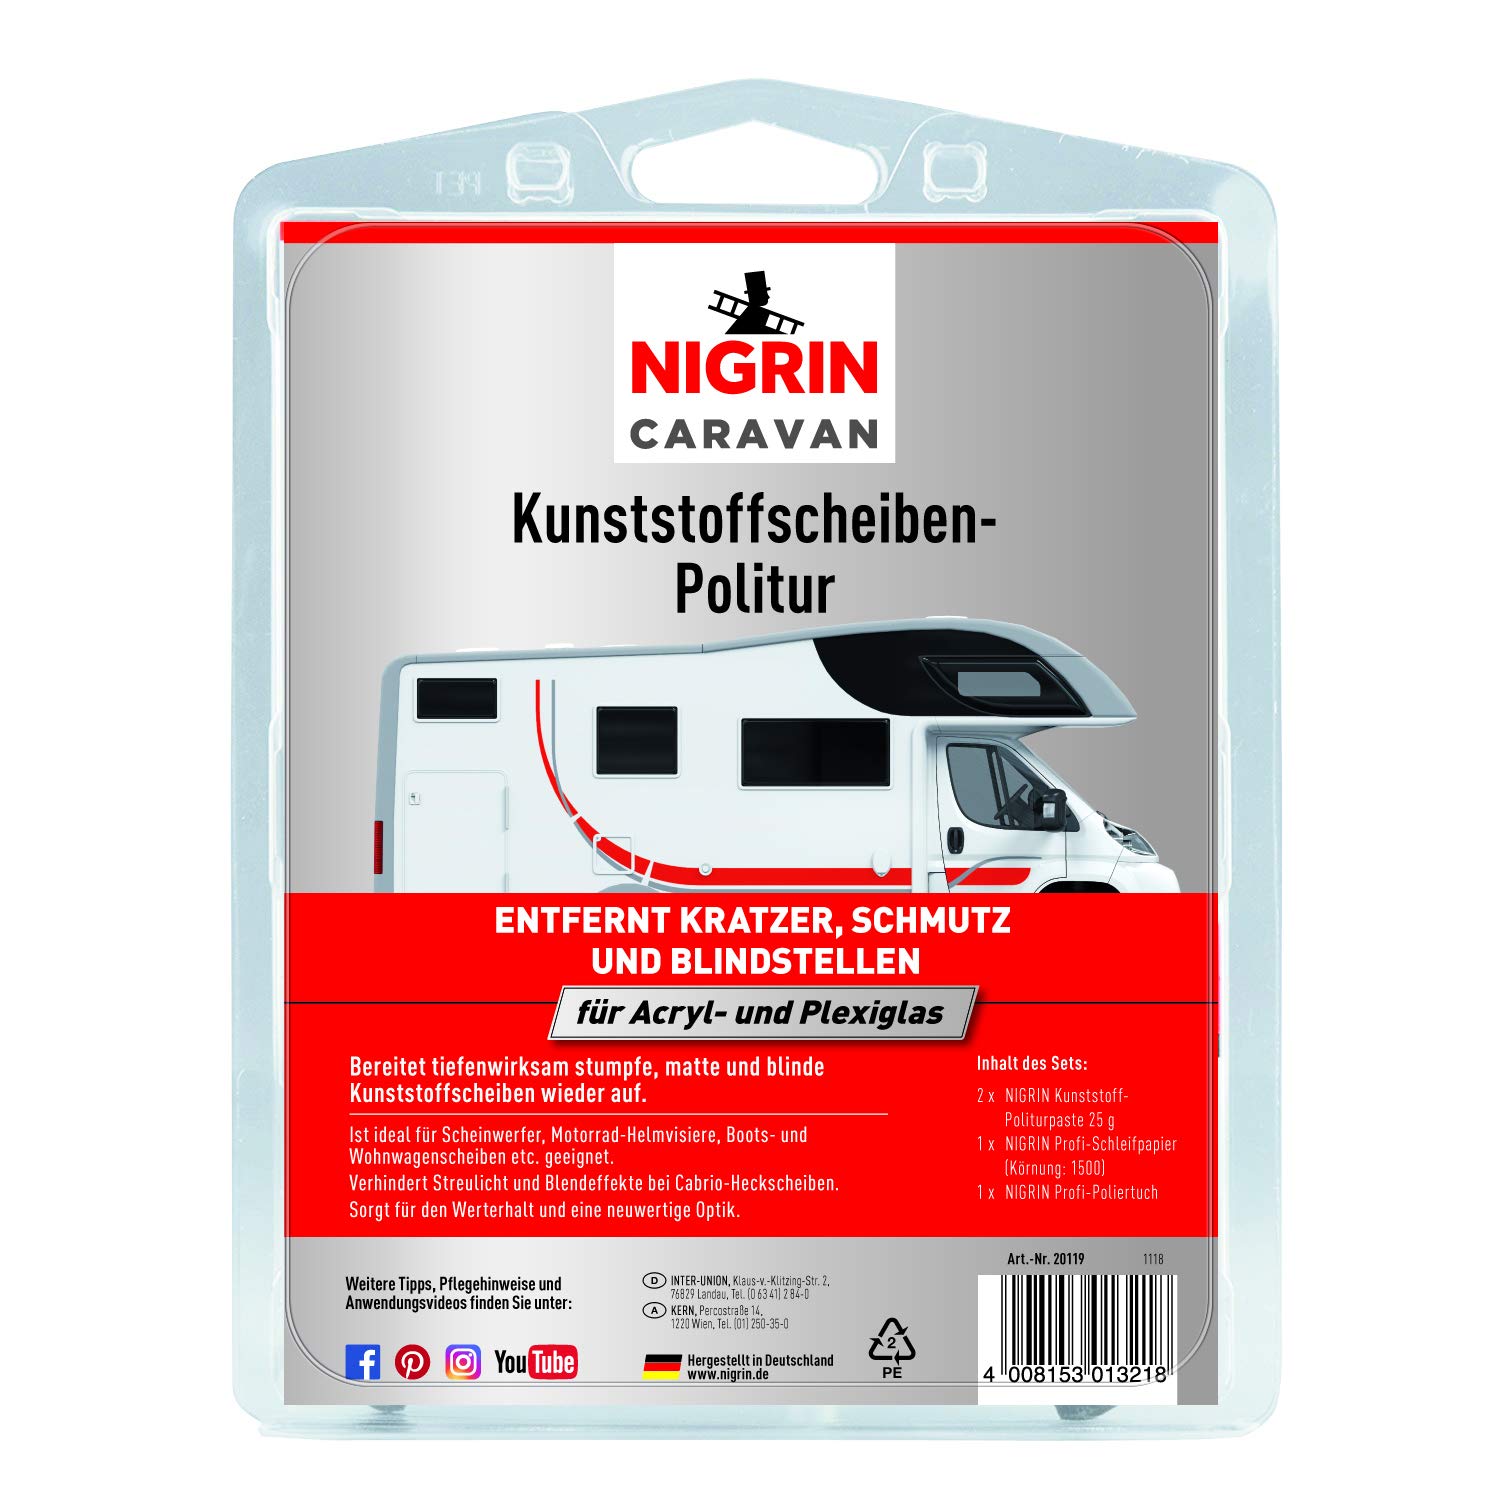 NIGRIN 20119 Caravan Kunststoffscheibenpolitur für Acryl- und Plexiglas von NIGRIN